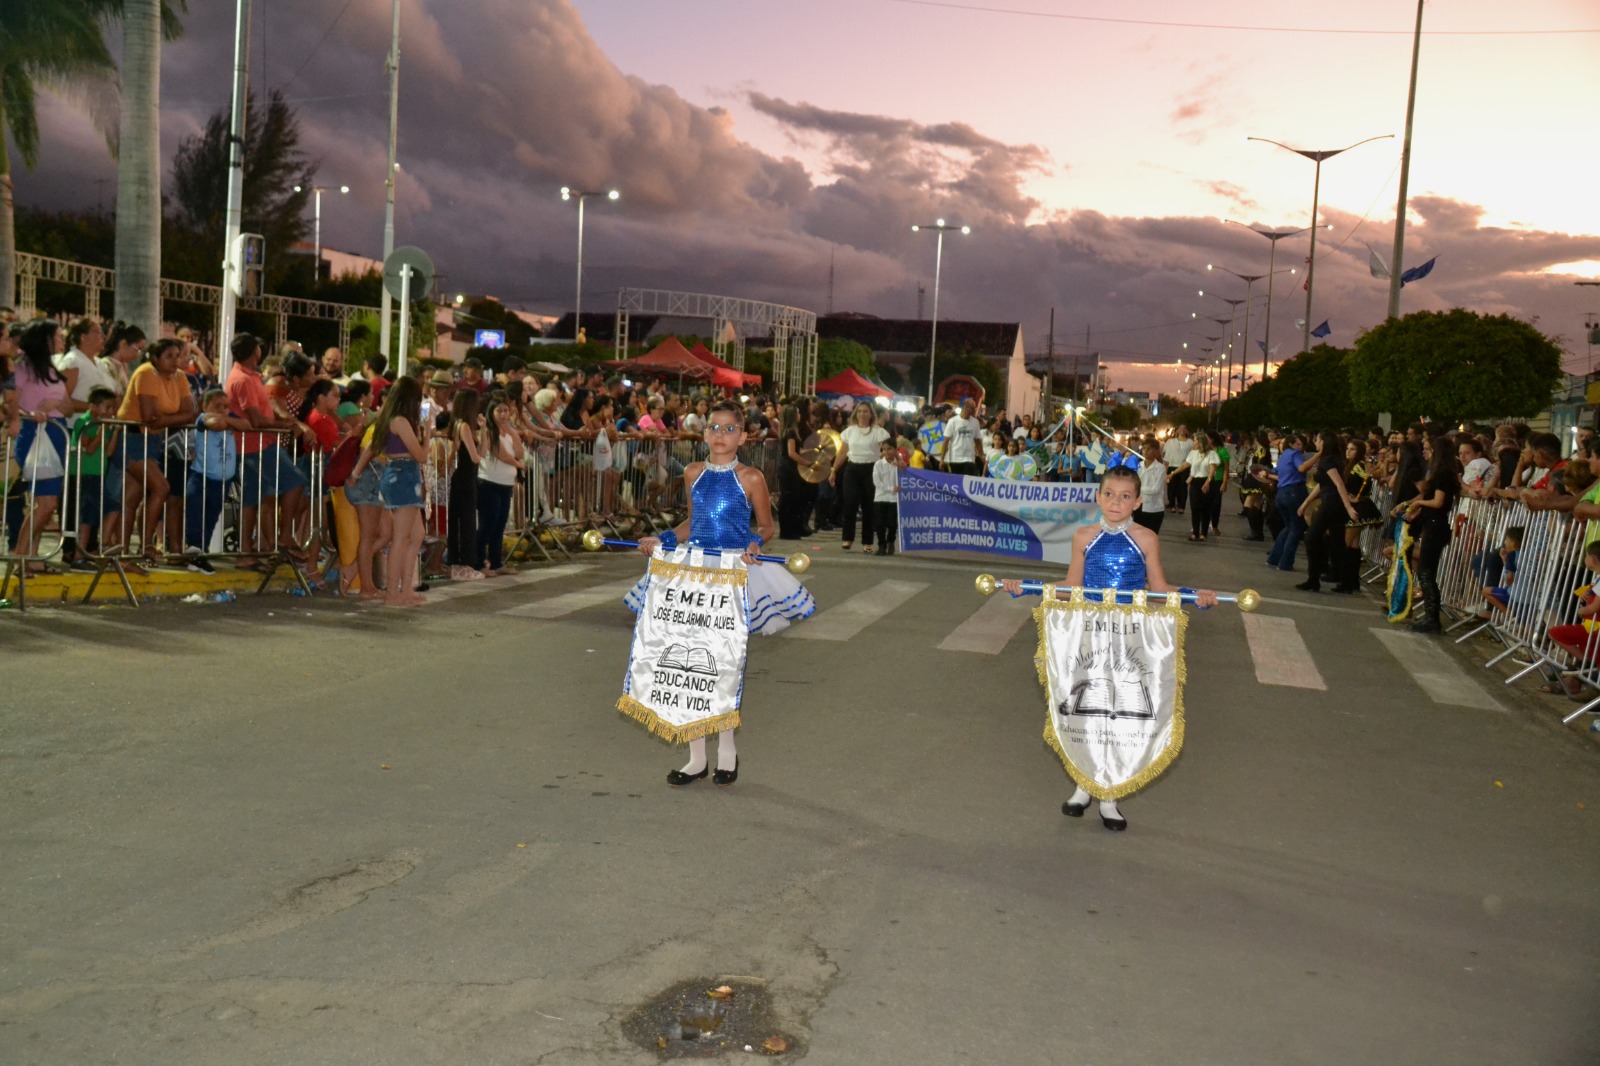 Desfiles-Civicos-em-Monteiro-acontecem-com-grande-presenca-de-publico-e-autoridades-55 Desfiles Cívicos em Monteiro acontecem com grande presença de público e autoridades